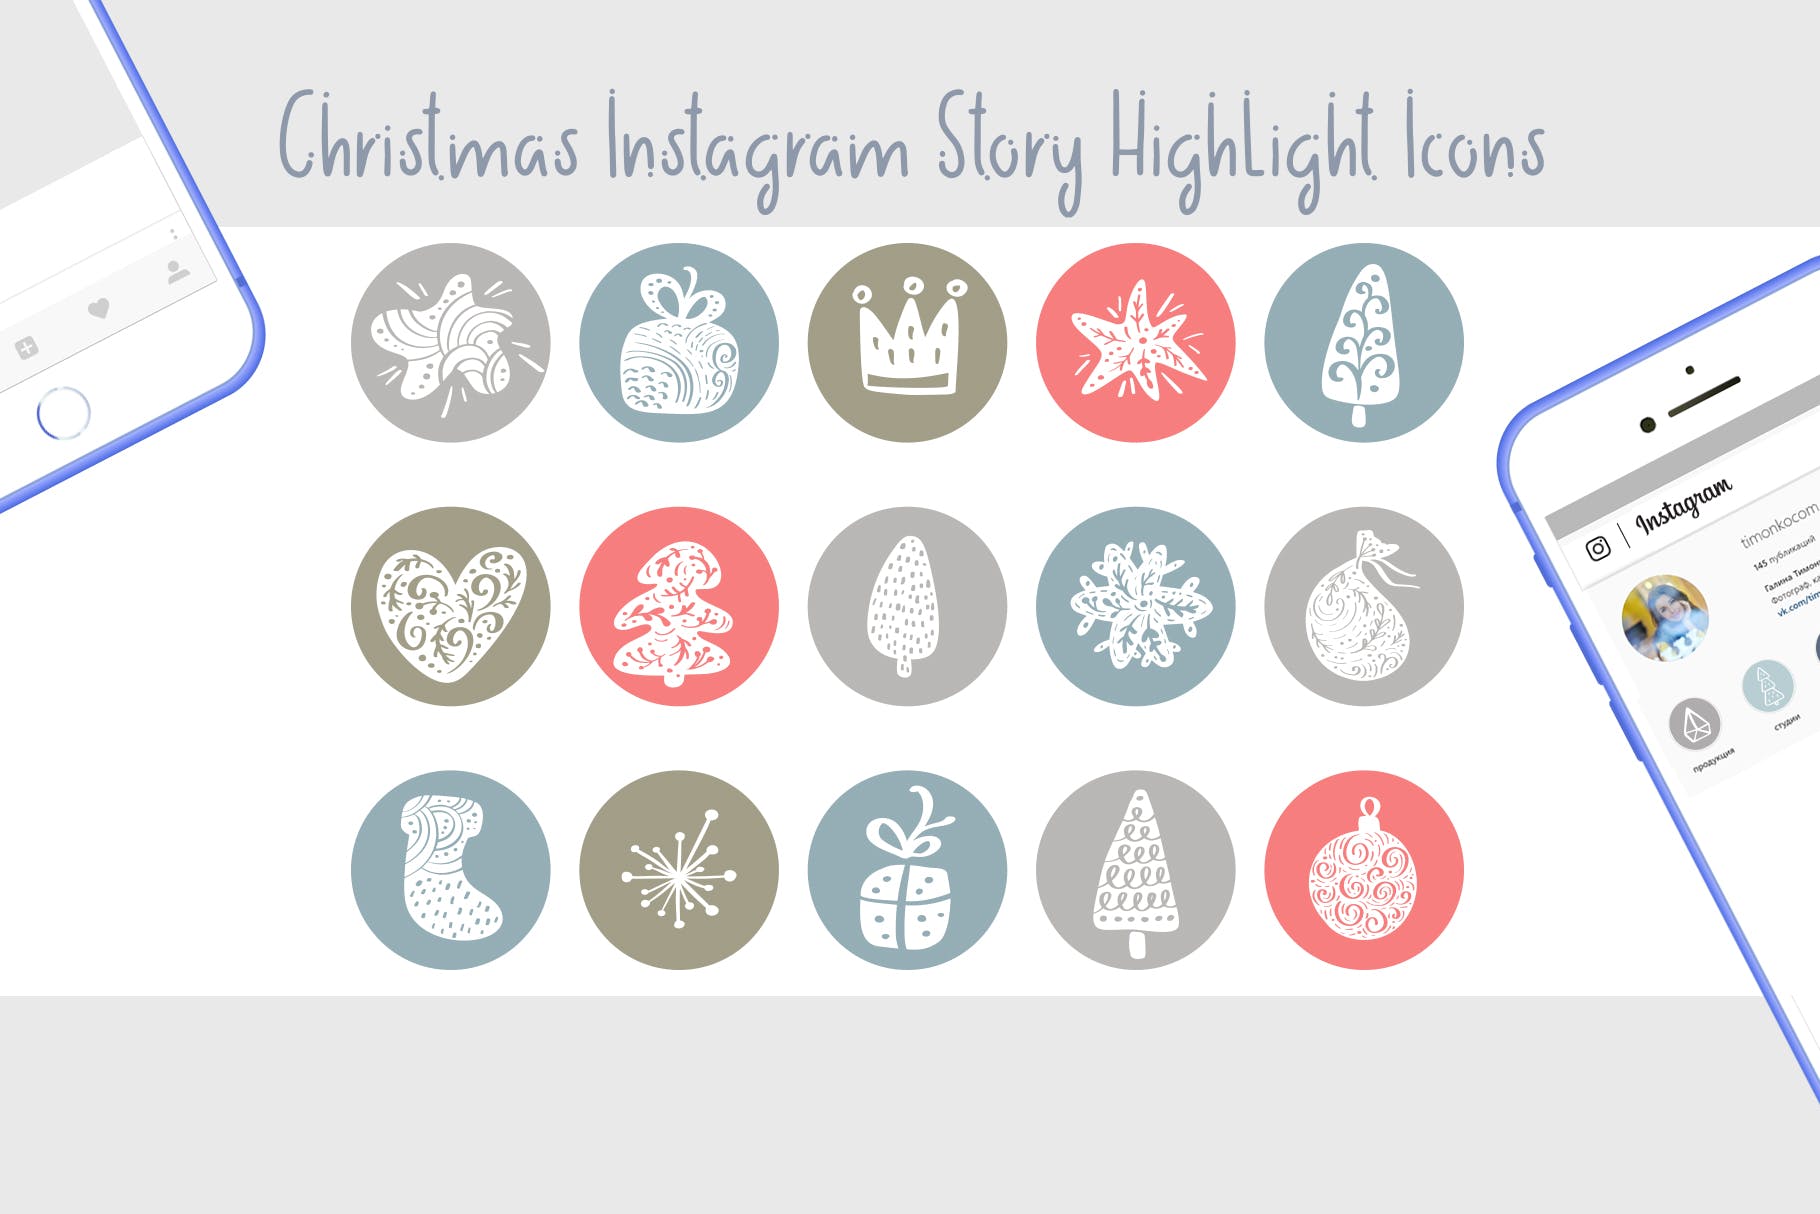 圣诞节主题矢量手绘16图库精选图标素材 Christmas Instagram highlight story icons插图(1)